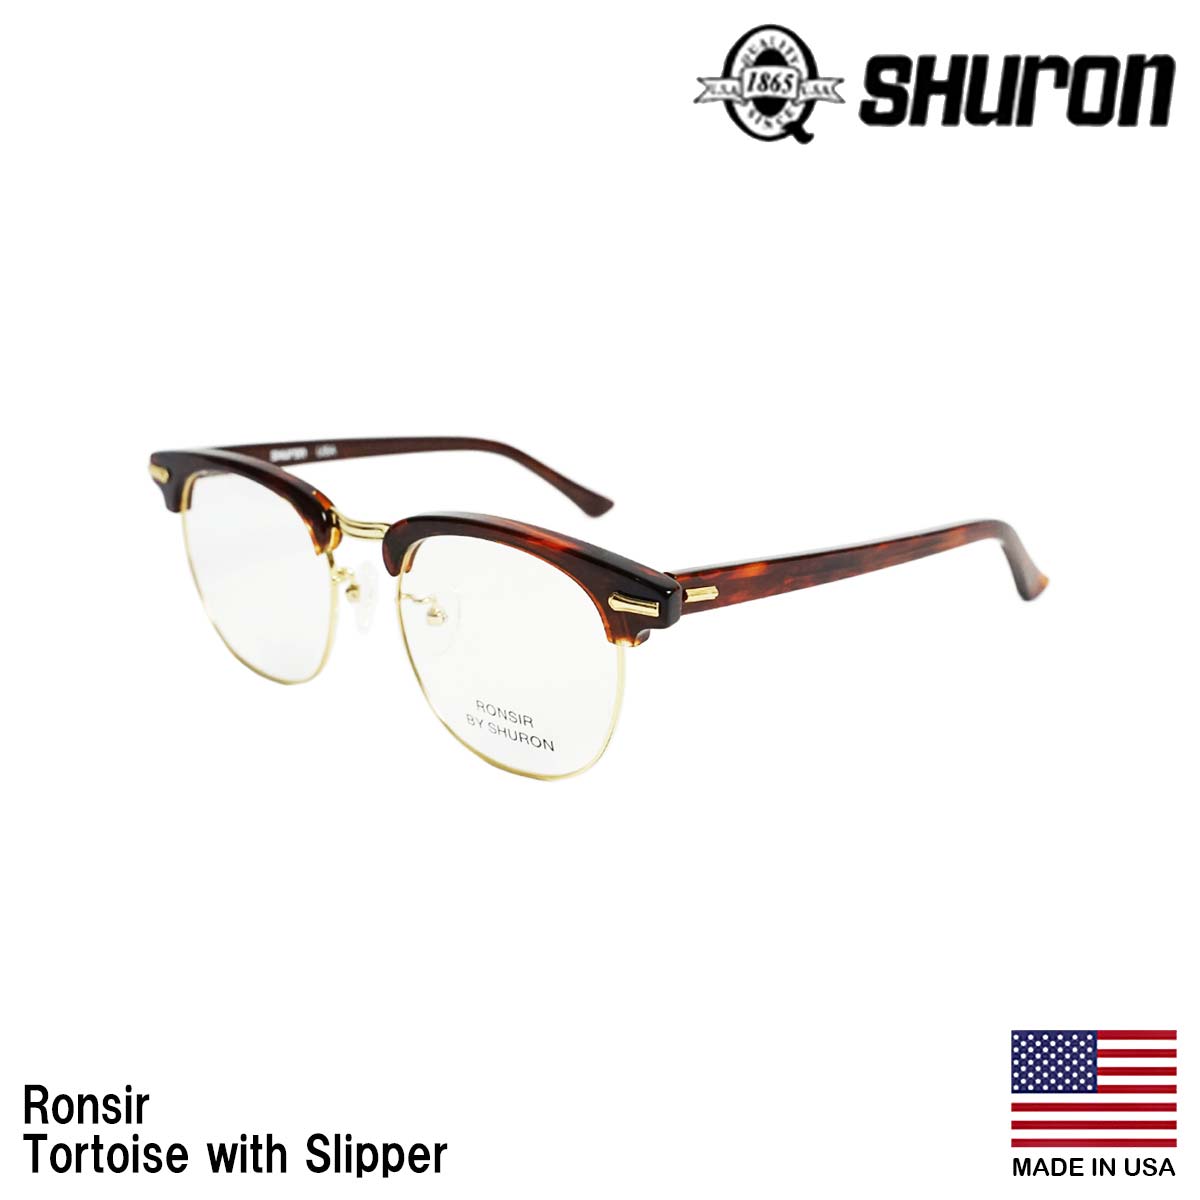 シュロン SHURON メガネ フレーム ロンサー 眼鏡 アメリカ製 米国製 